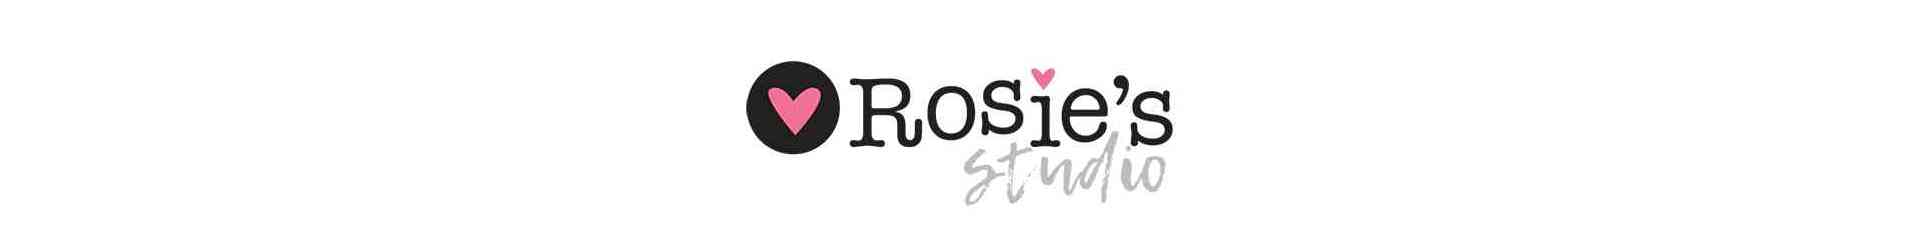 ROSIE'S STUDIO